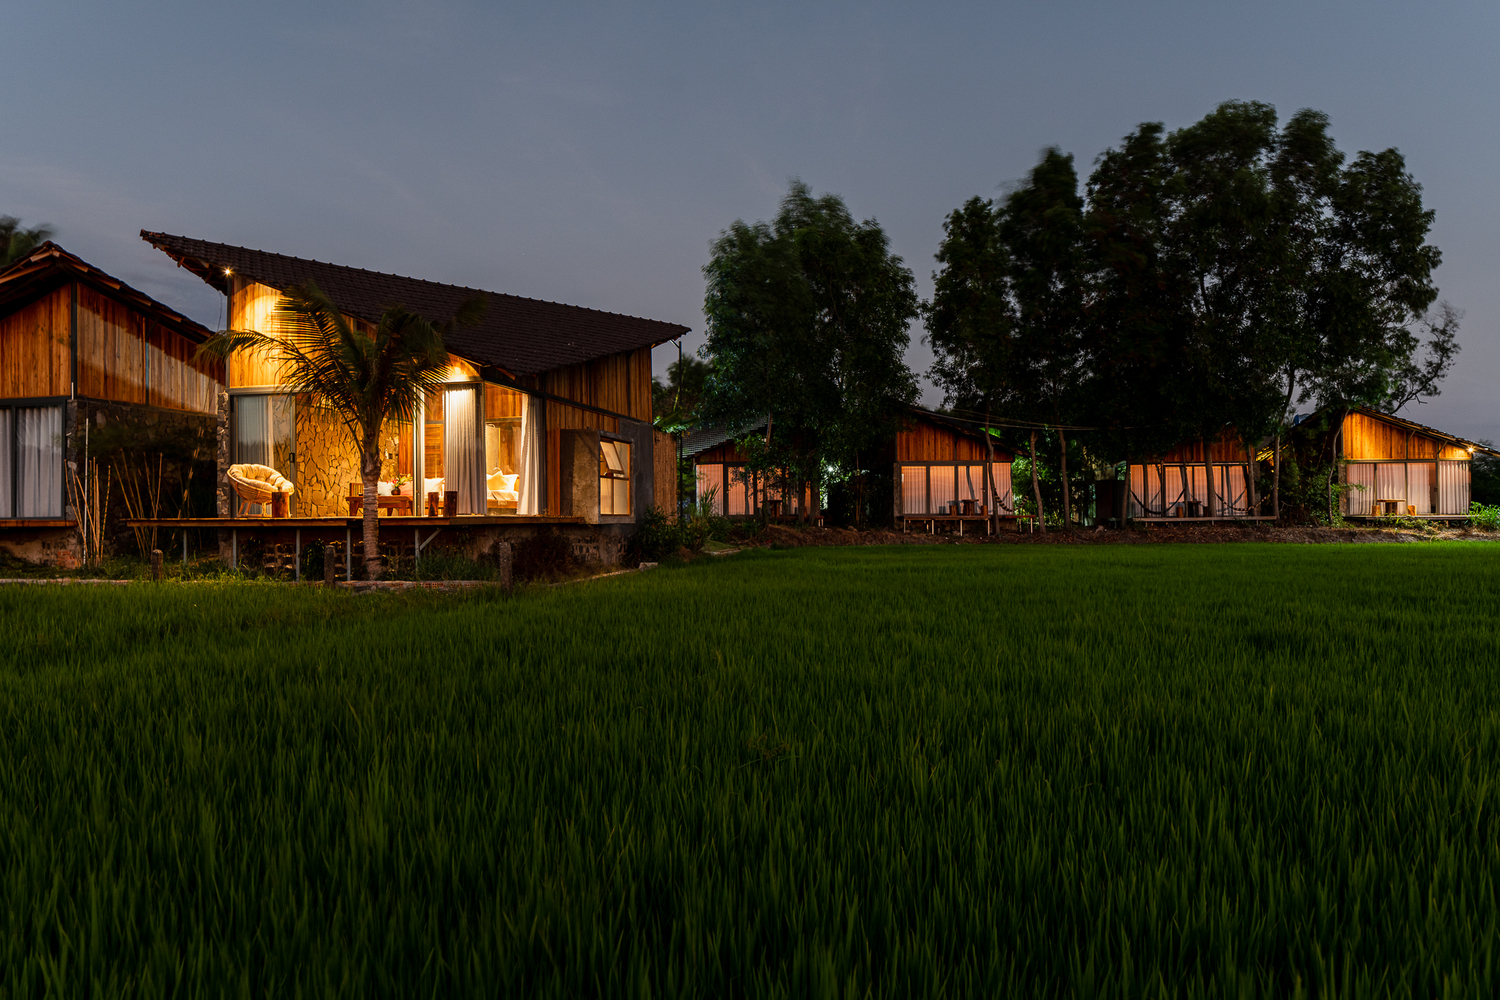 Hình ảnh khu nhà nghỉ dưỡng cạnh ruộng lúa khi đêm xuống với ánh đèn vàng ấm áp